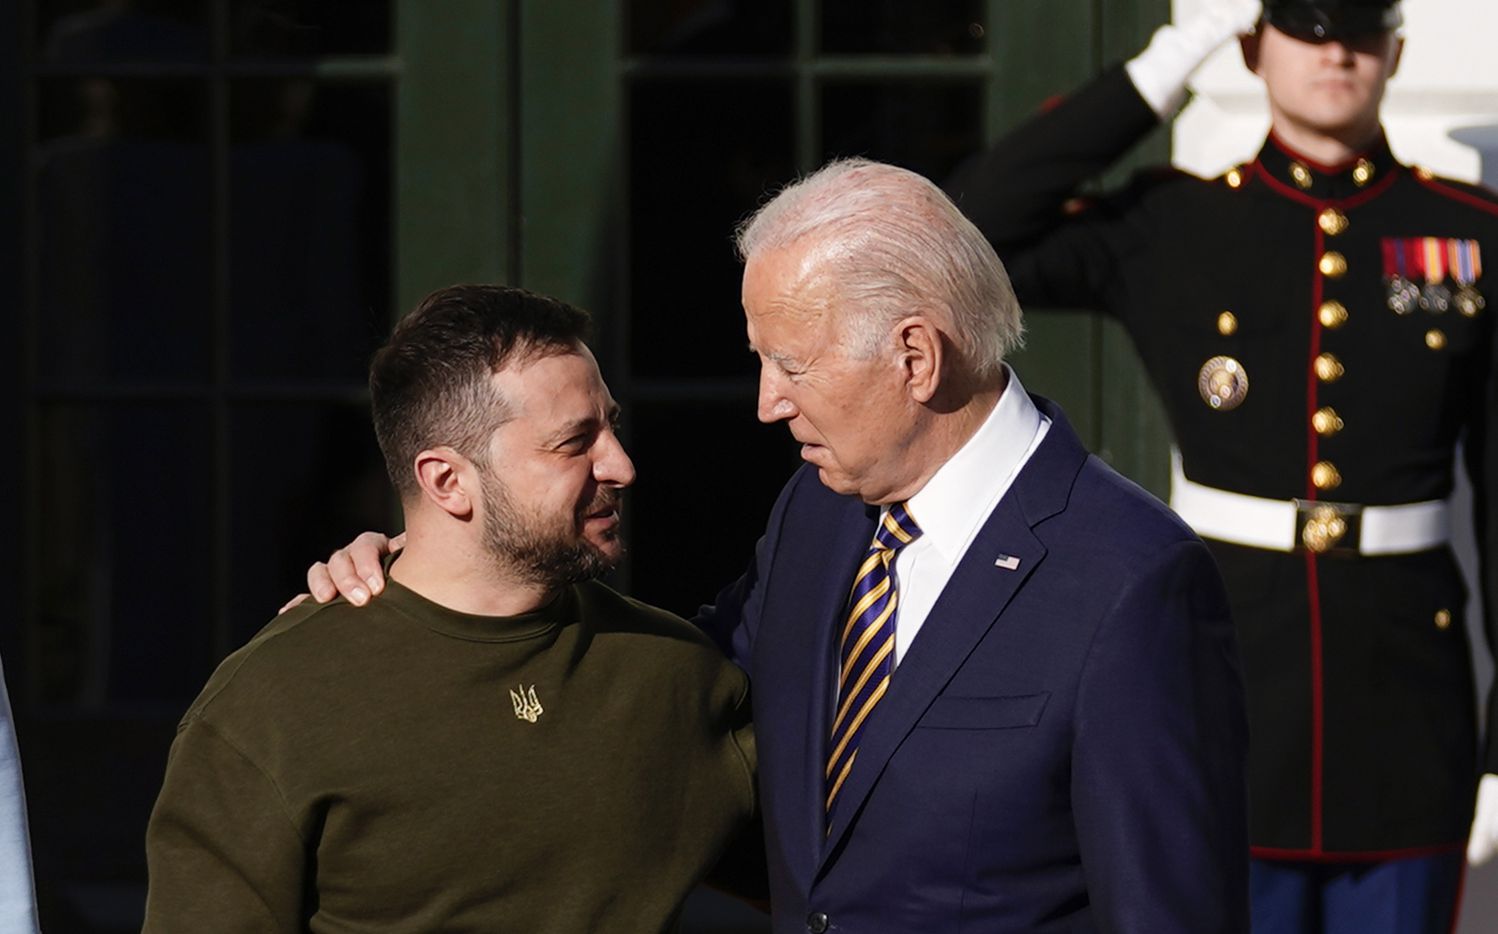 US President Biden welcomes Ukrainian President Zelenskyy